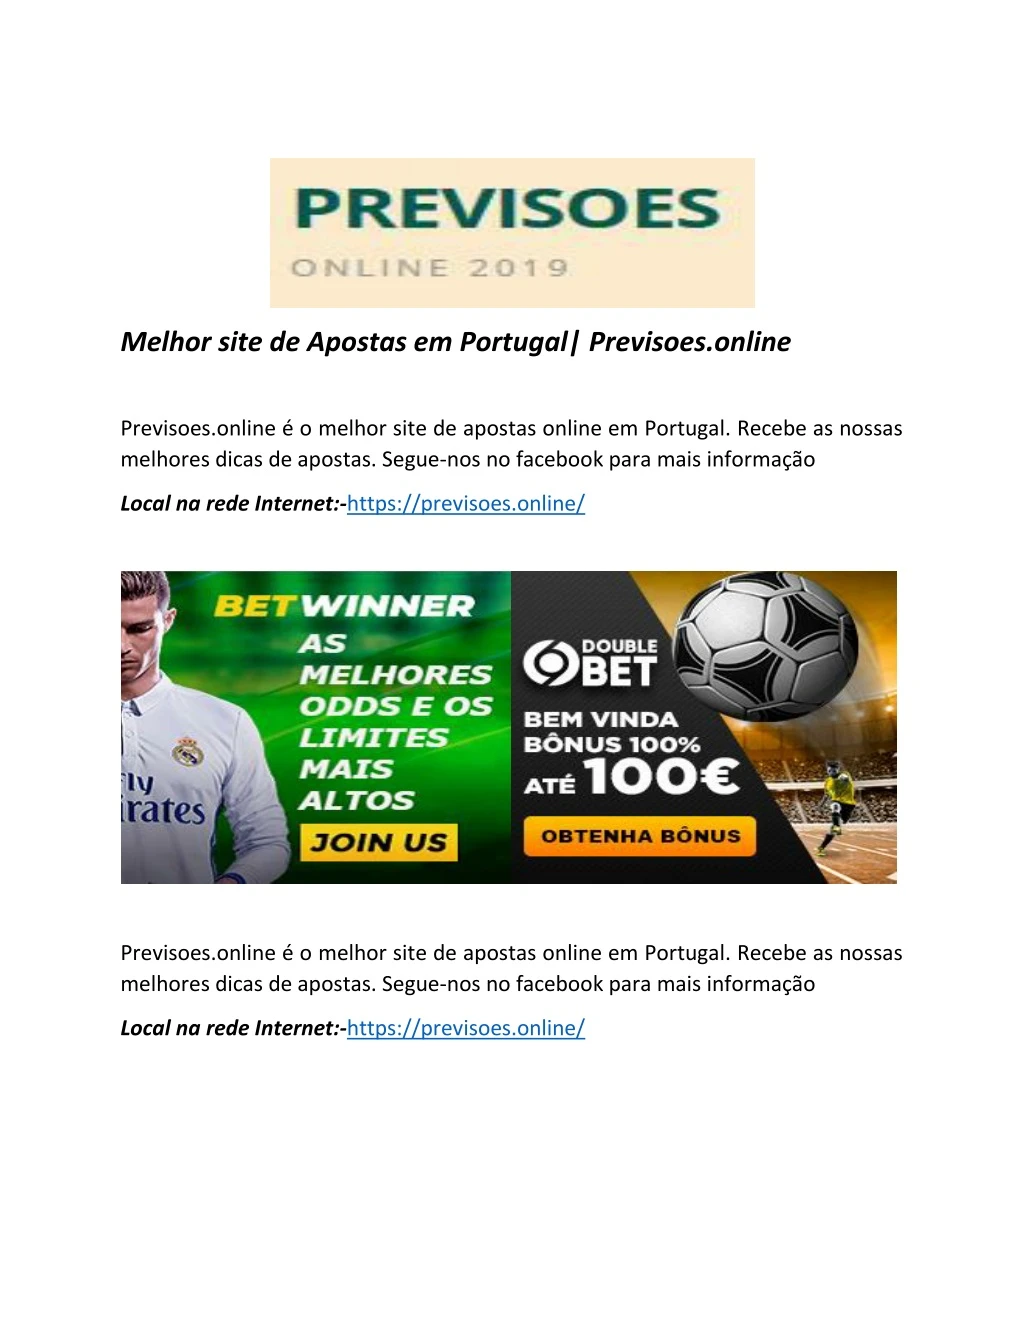 melhor site de apostas em portugal previsoes